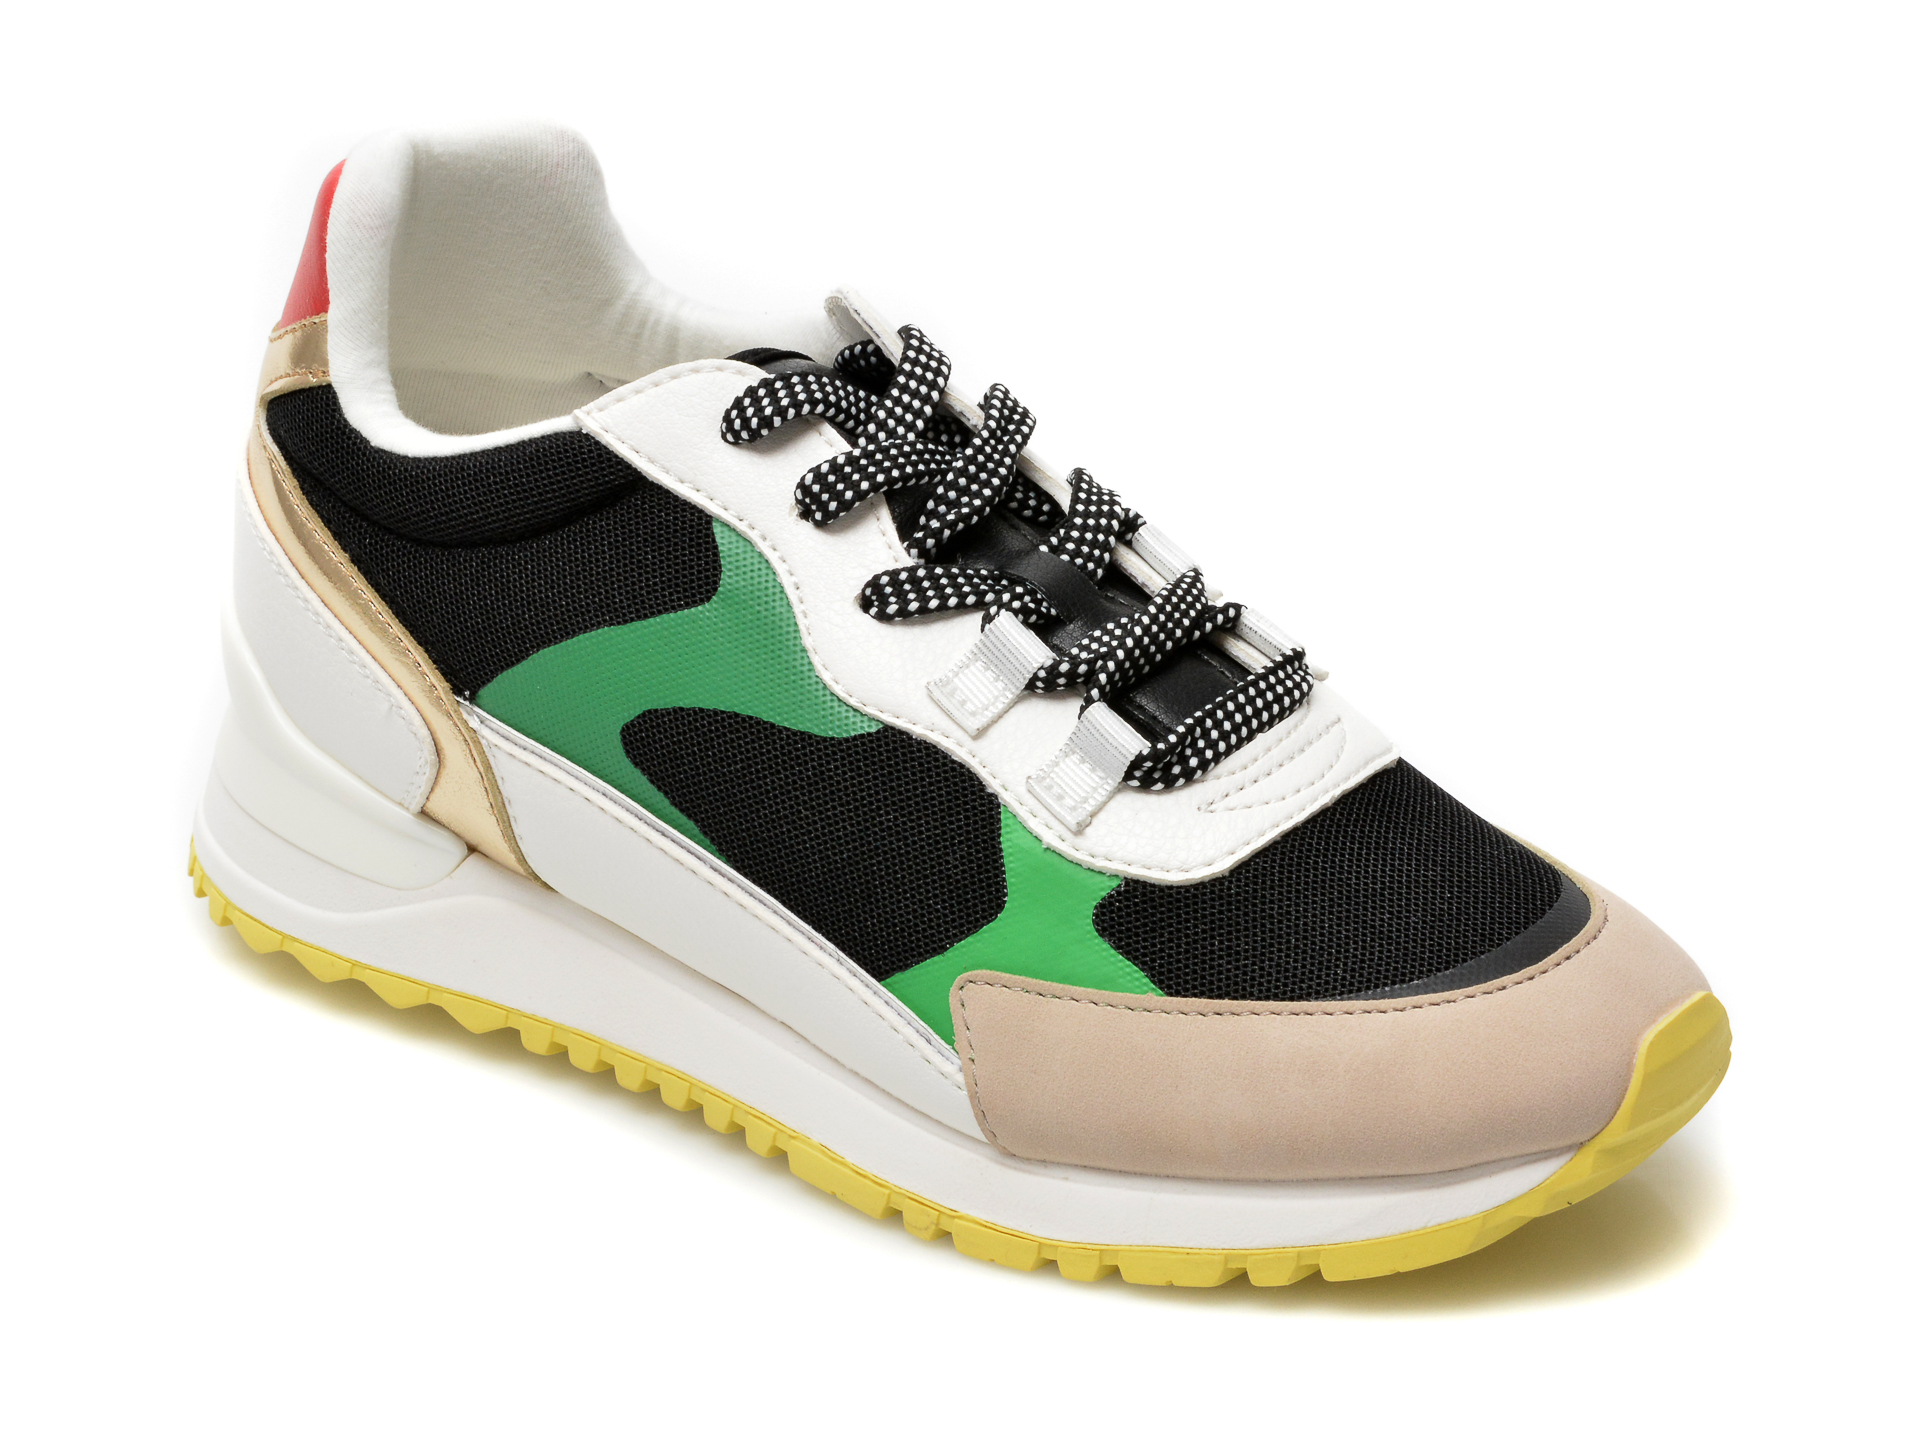 Pantofi sport ALDO multicolori, Esclub960, din material textil si piele ecologica Aldo Aldo